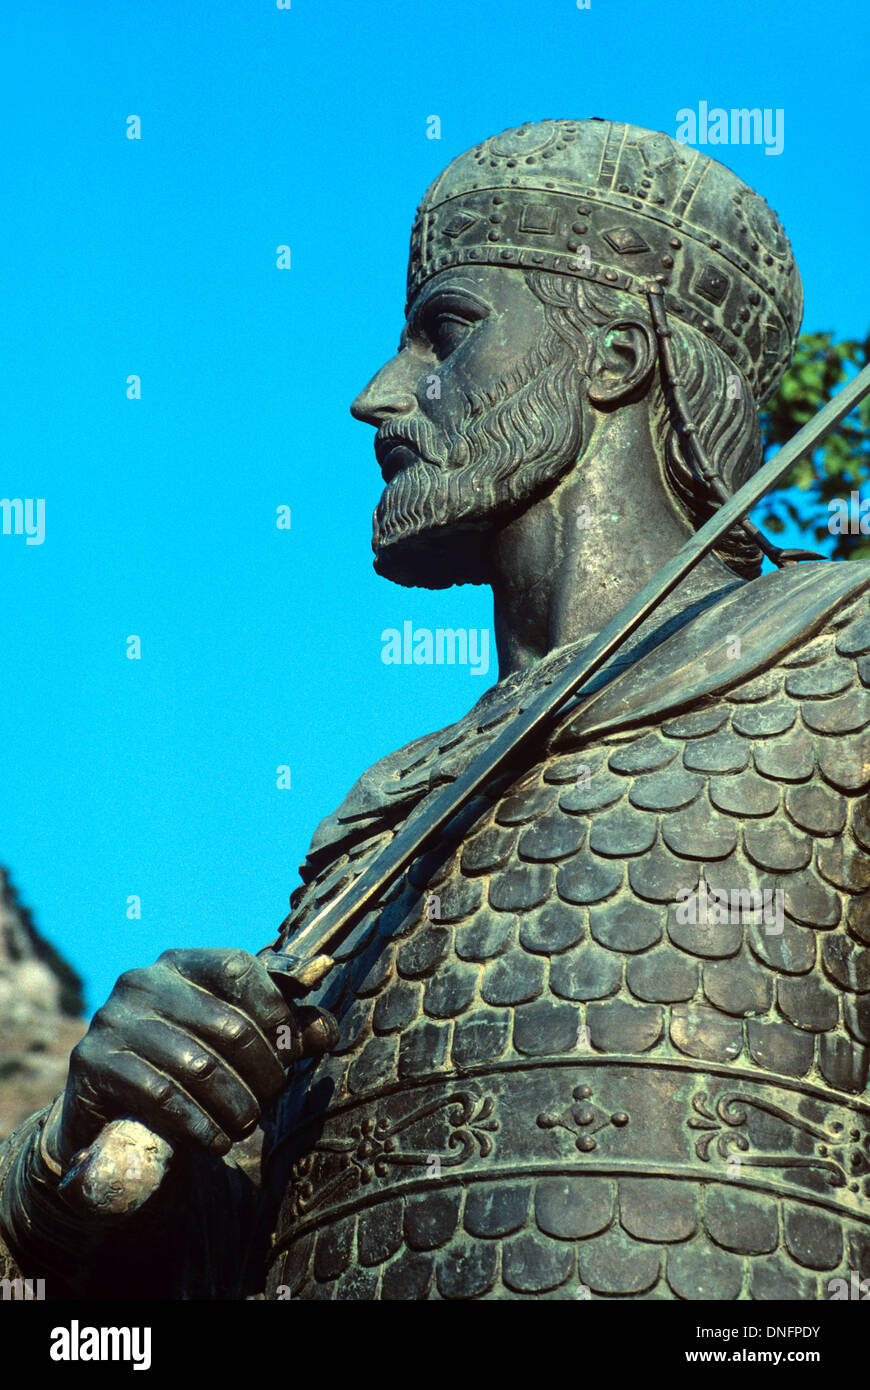 Statue des letzten römischen & byzantinischer Kaiser Constantine XI Palaiologos (1404-1453) tragen Rüstung & halten Schwert Mystras Griechenland Stockfoto